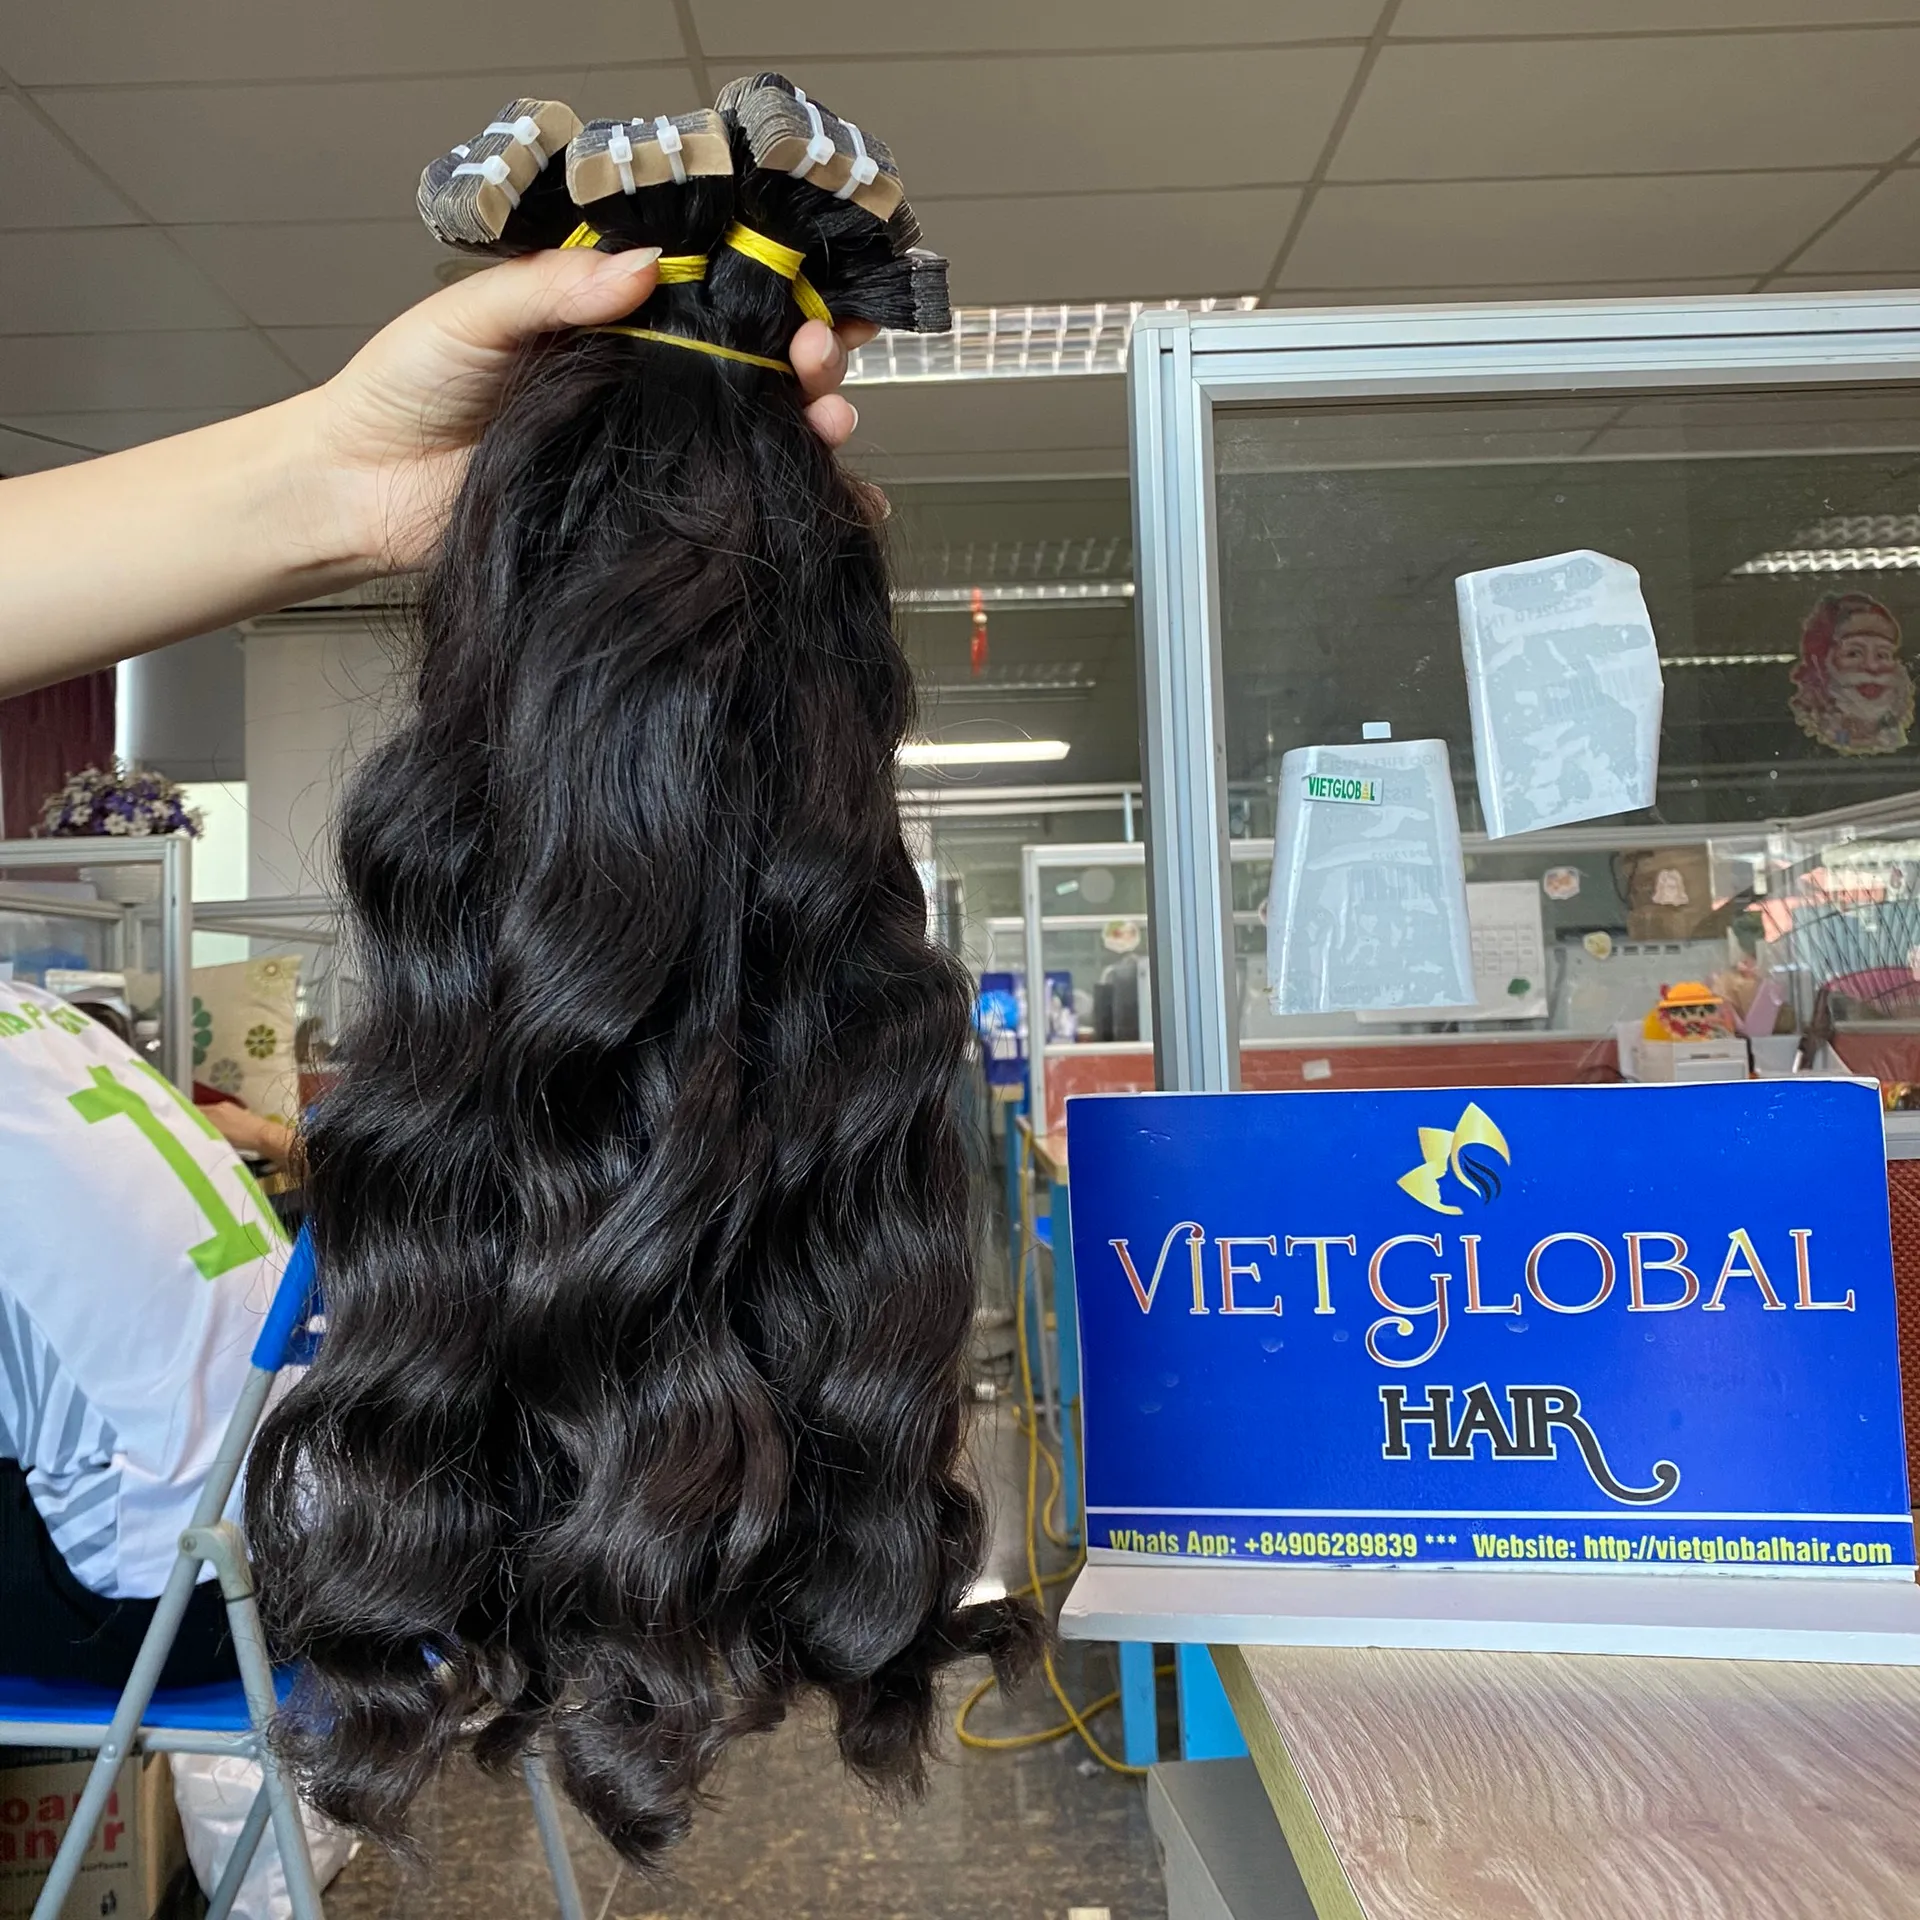 Solo donante 100% cabello humano vietnamita crudo Color natural cinta ondulada en extensiones de cabello para mujer negra